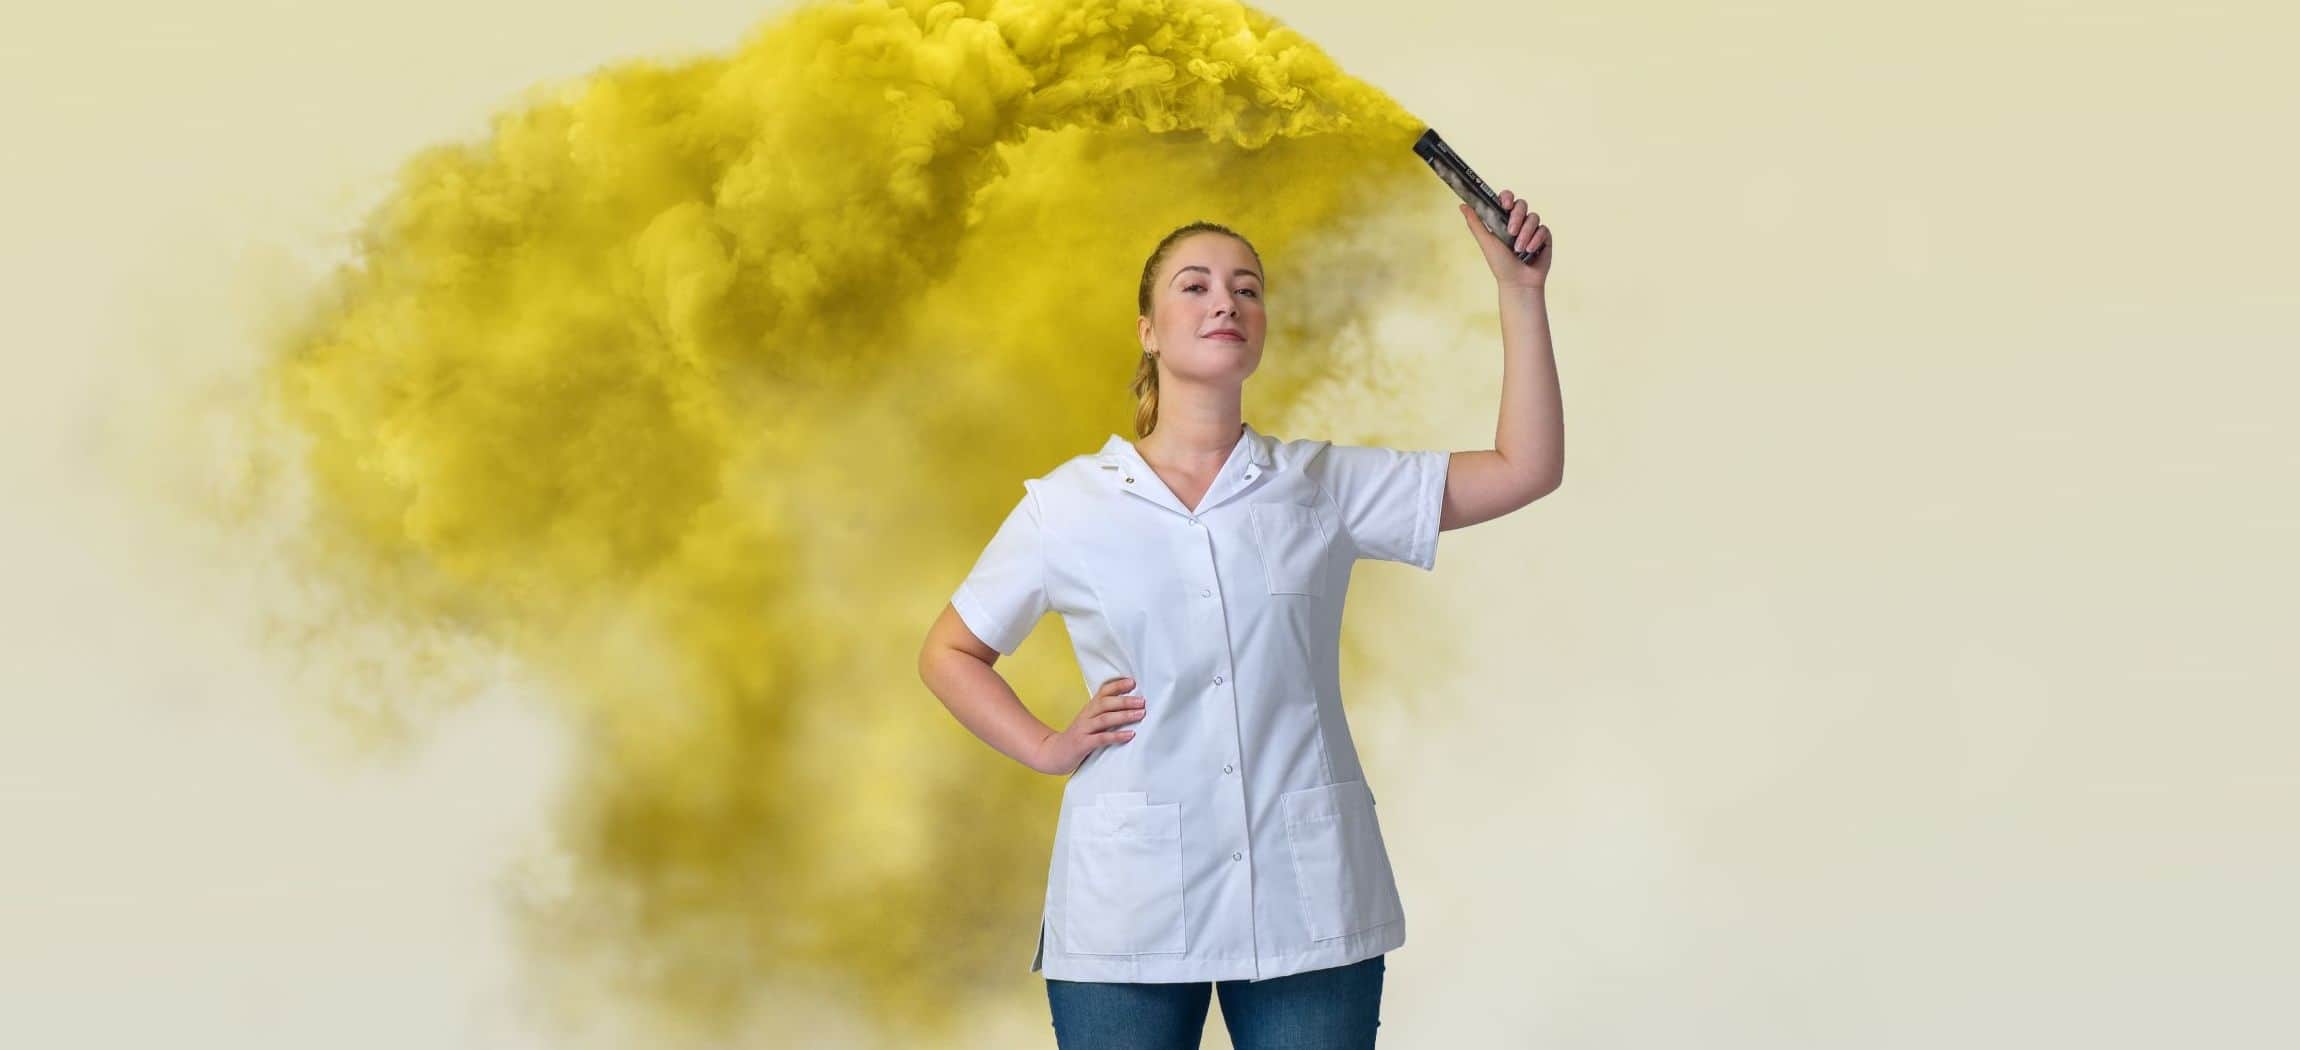 Vrouwelijke verzorgende in wit uniformjasje houdt fakkel vast met gele rook